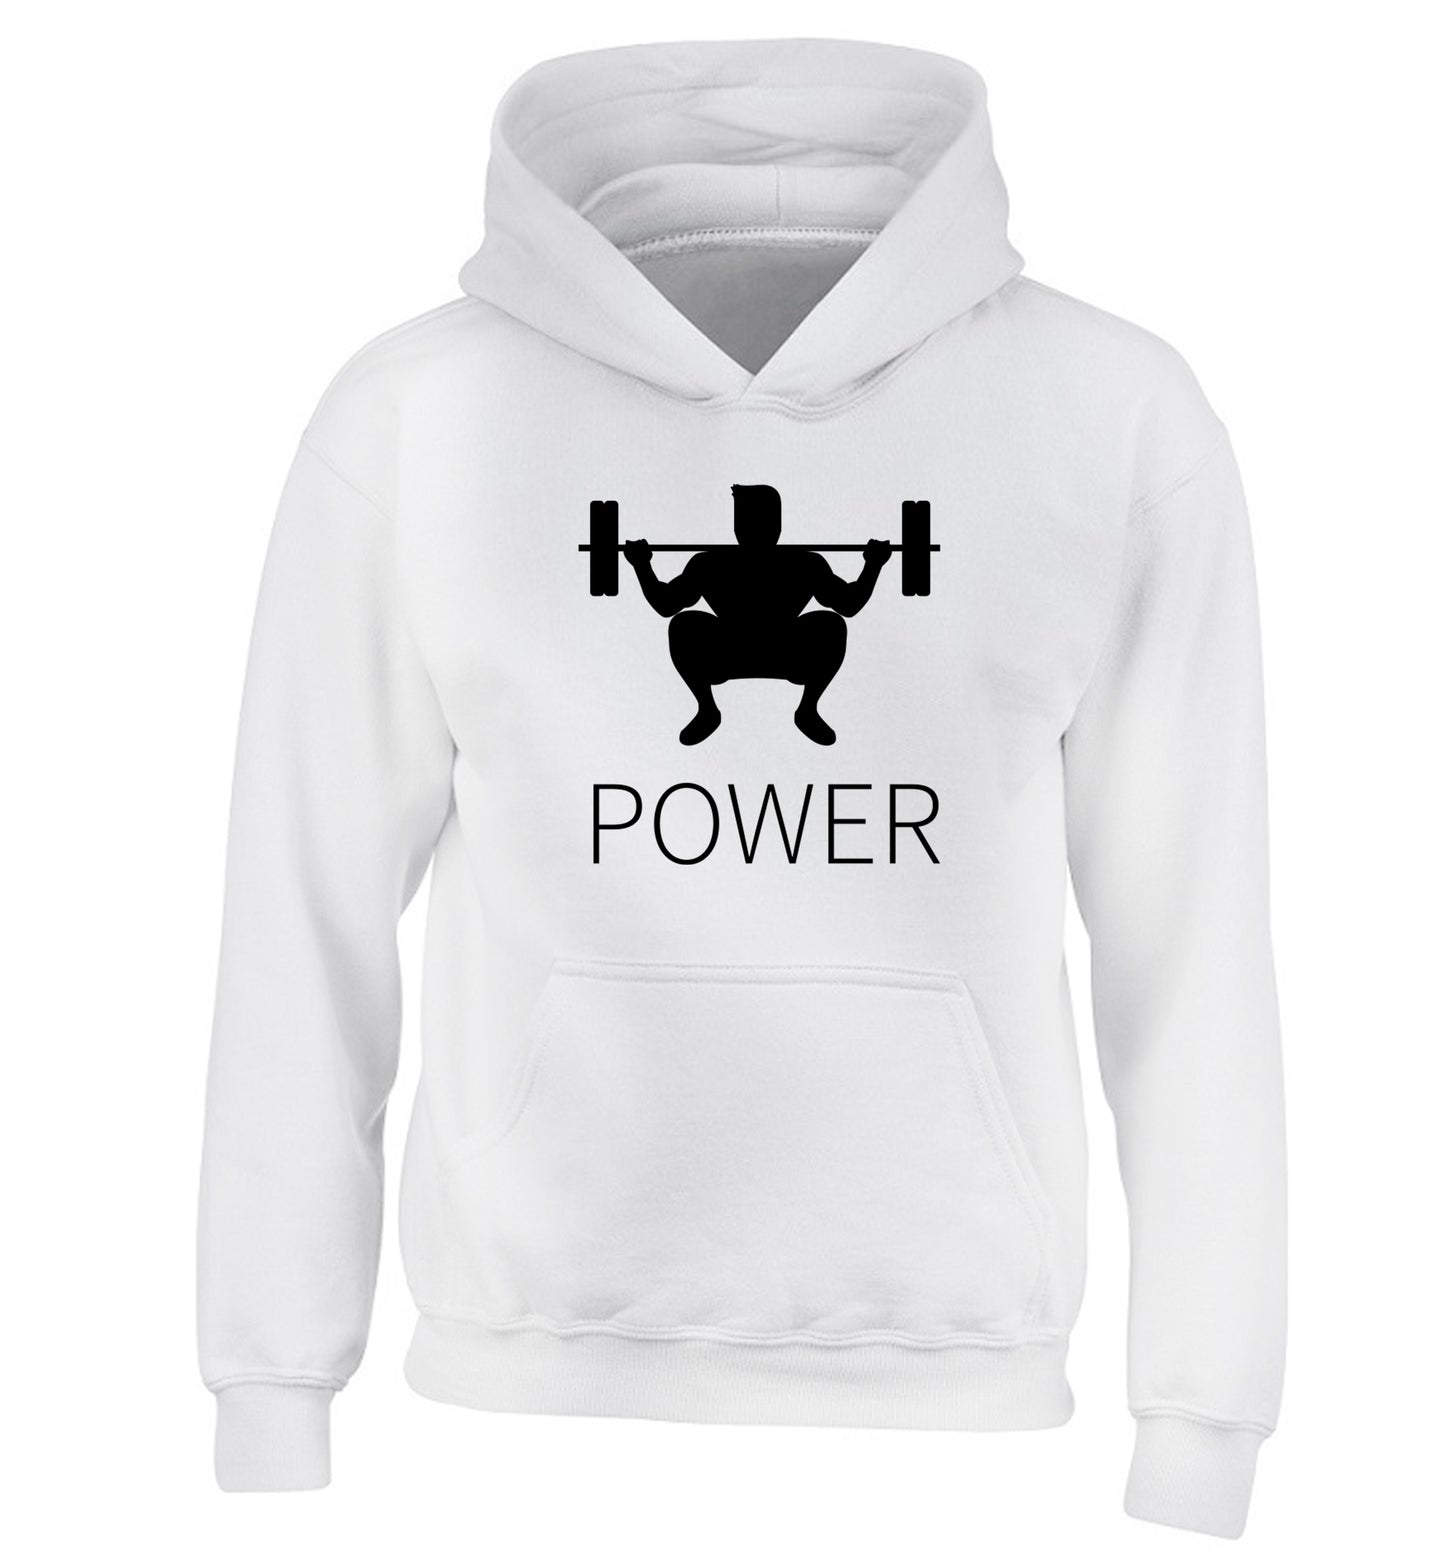 Lift power children's white hoodie 12-13 Years